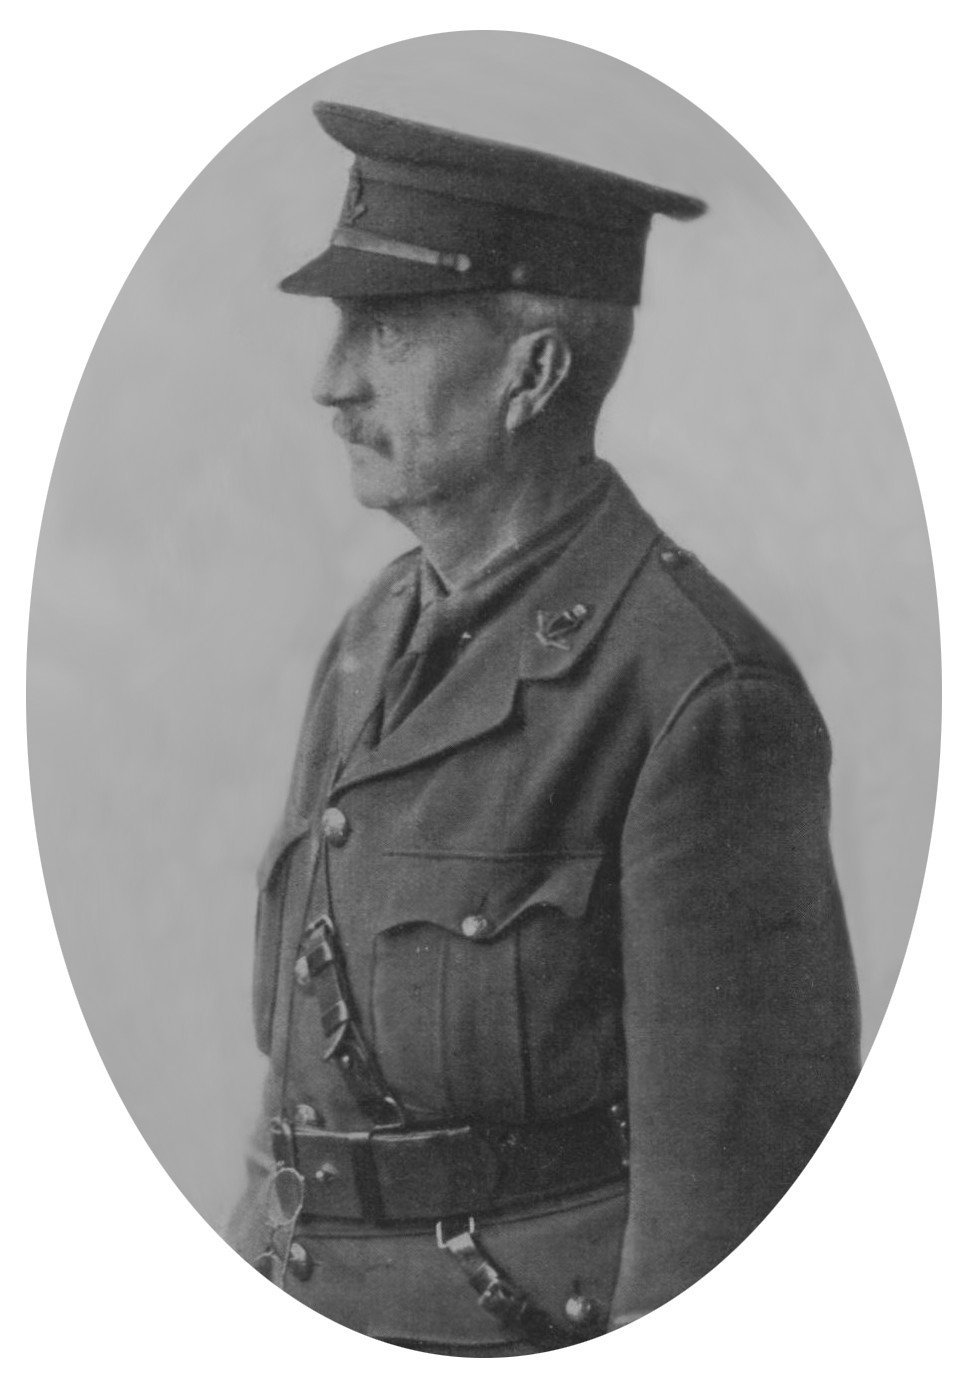 Irish Legal Heritage: Major William Redmond